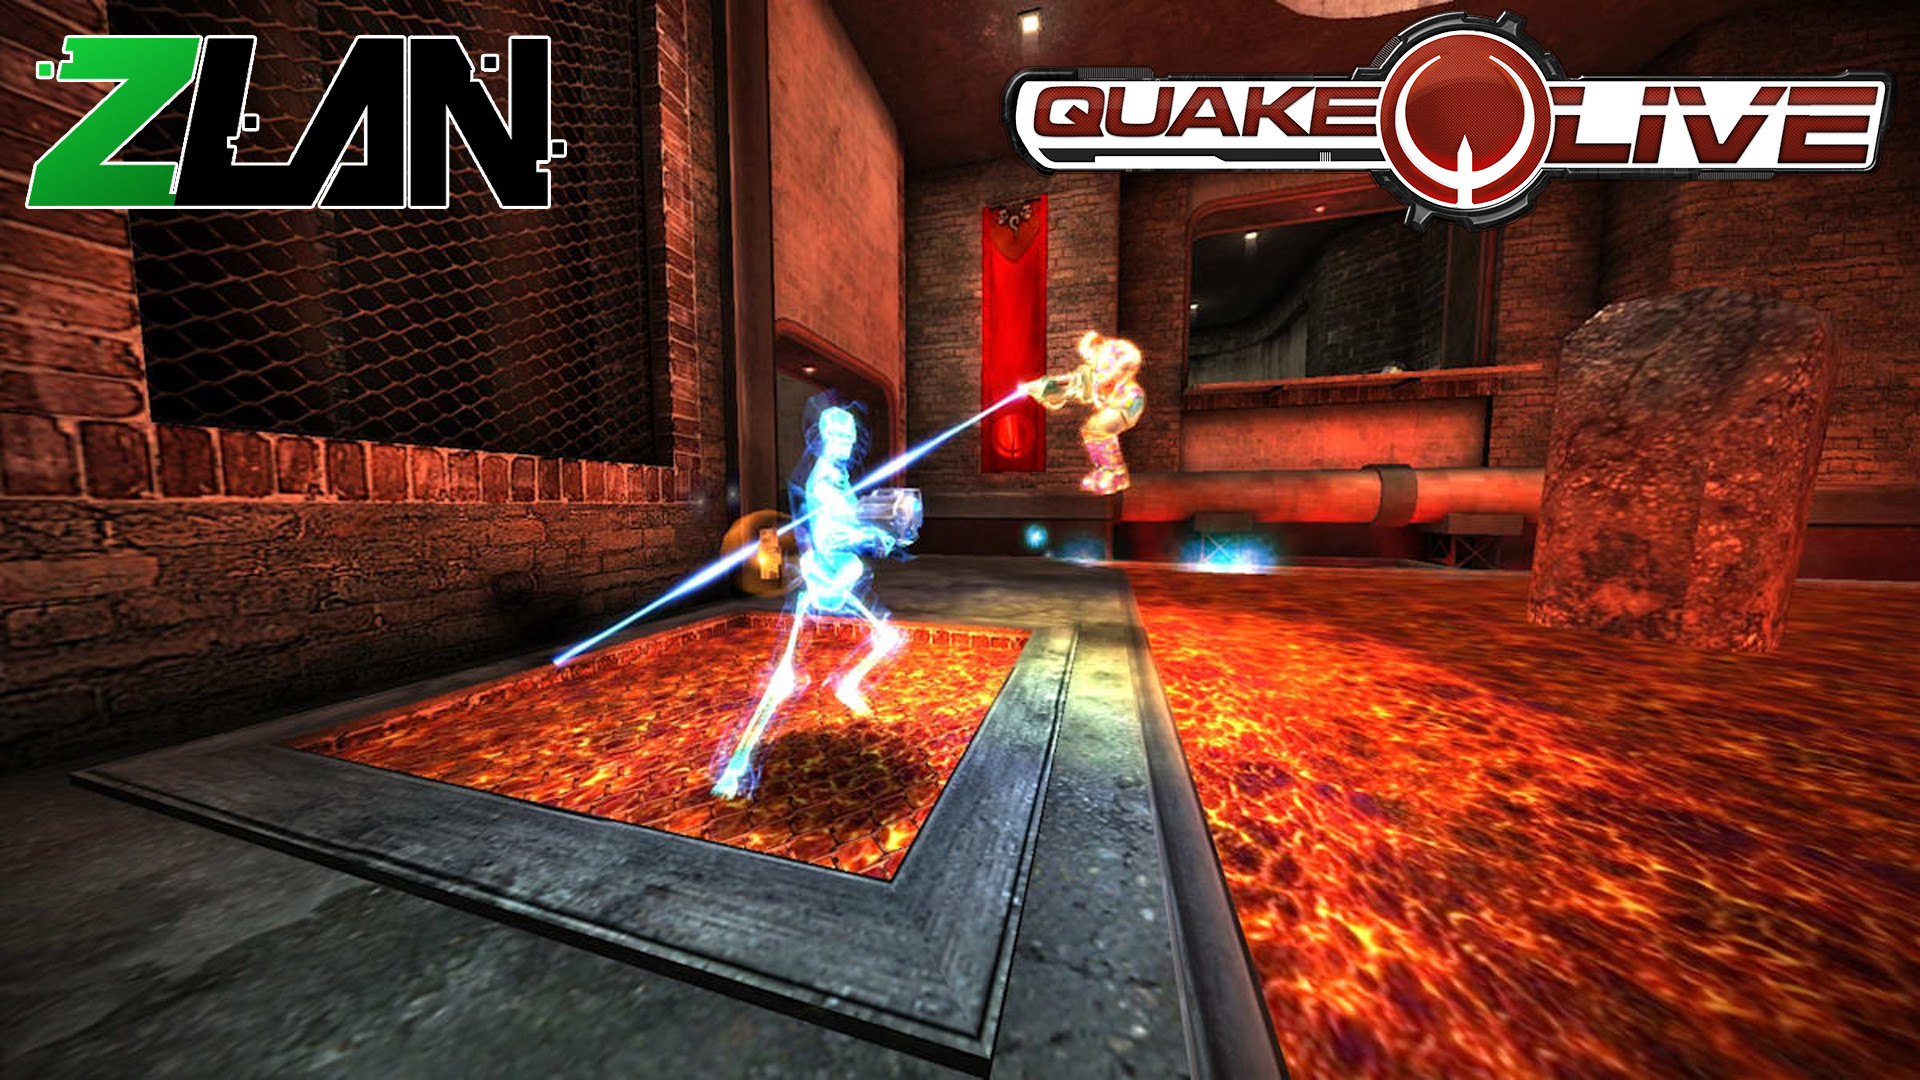 Règles et format pour Quake Live ?